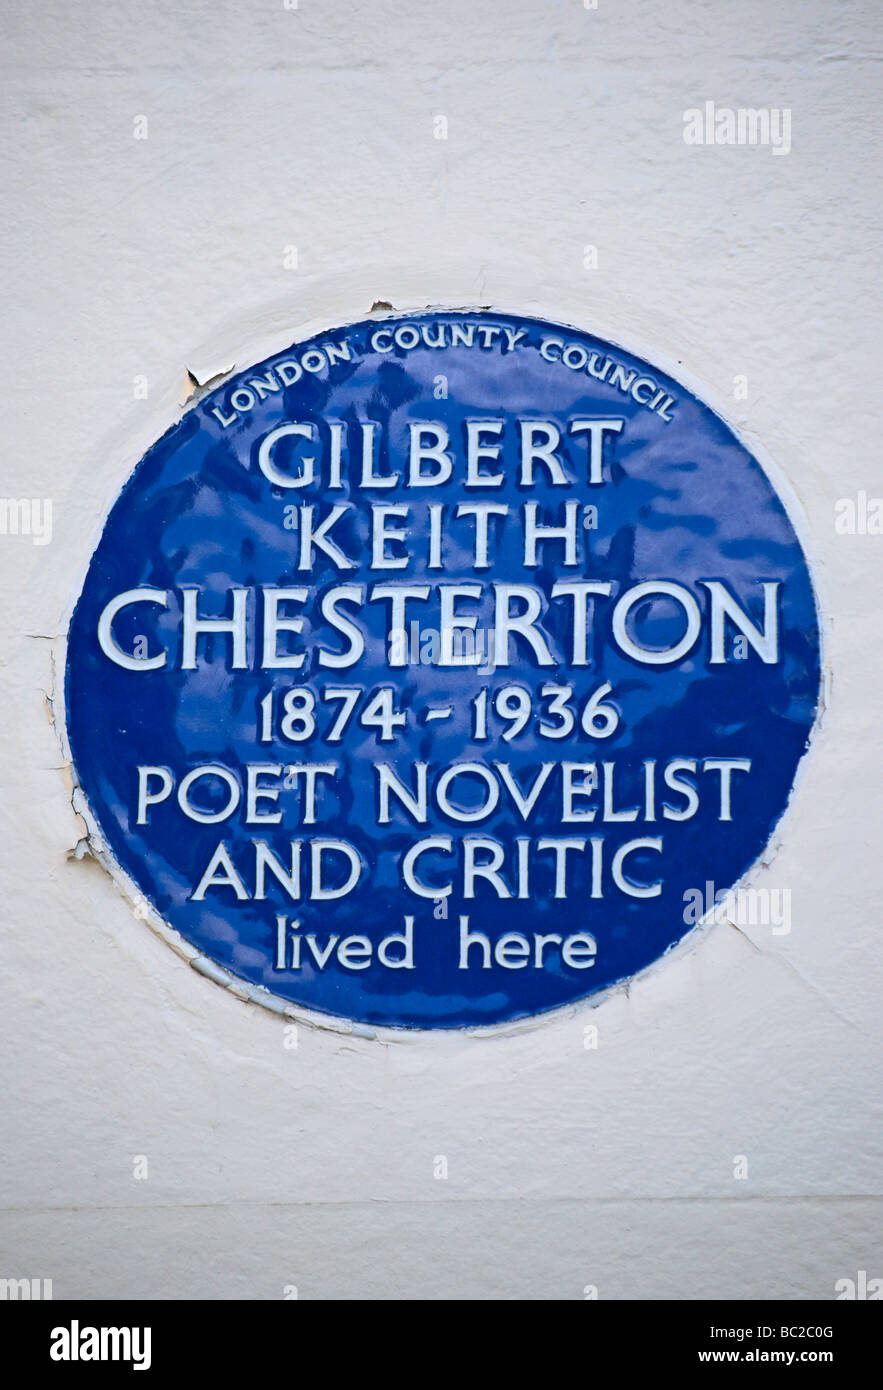 London Grafschaftsrat blaue Plakette markiert eine ehemalige Heimat der Dichter, Schriftsteller und Kritiker, g. k. Chesterton Stockfoto